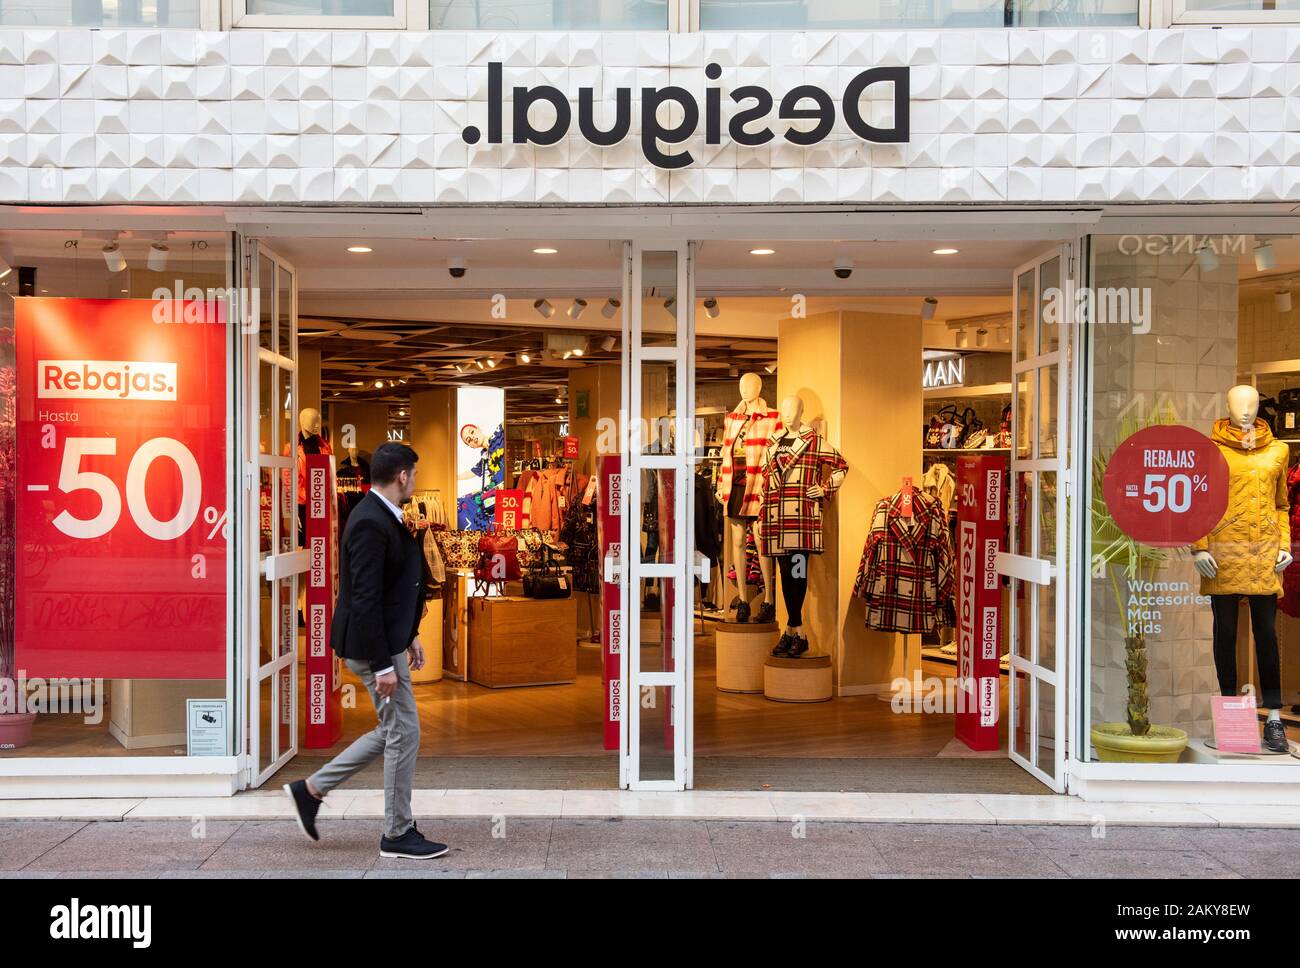 Spanisch Kleidung Marke Desigual Store in Spanien Stockfotografie - Alamy